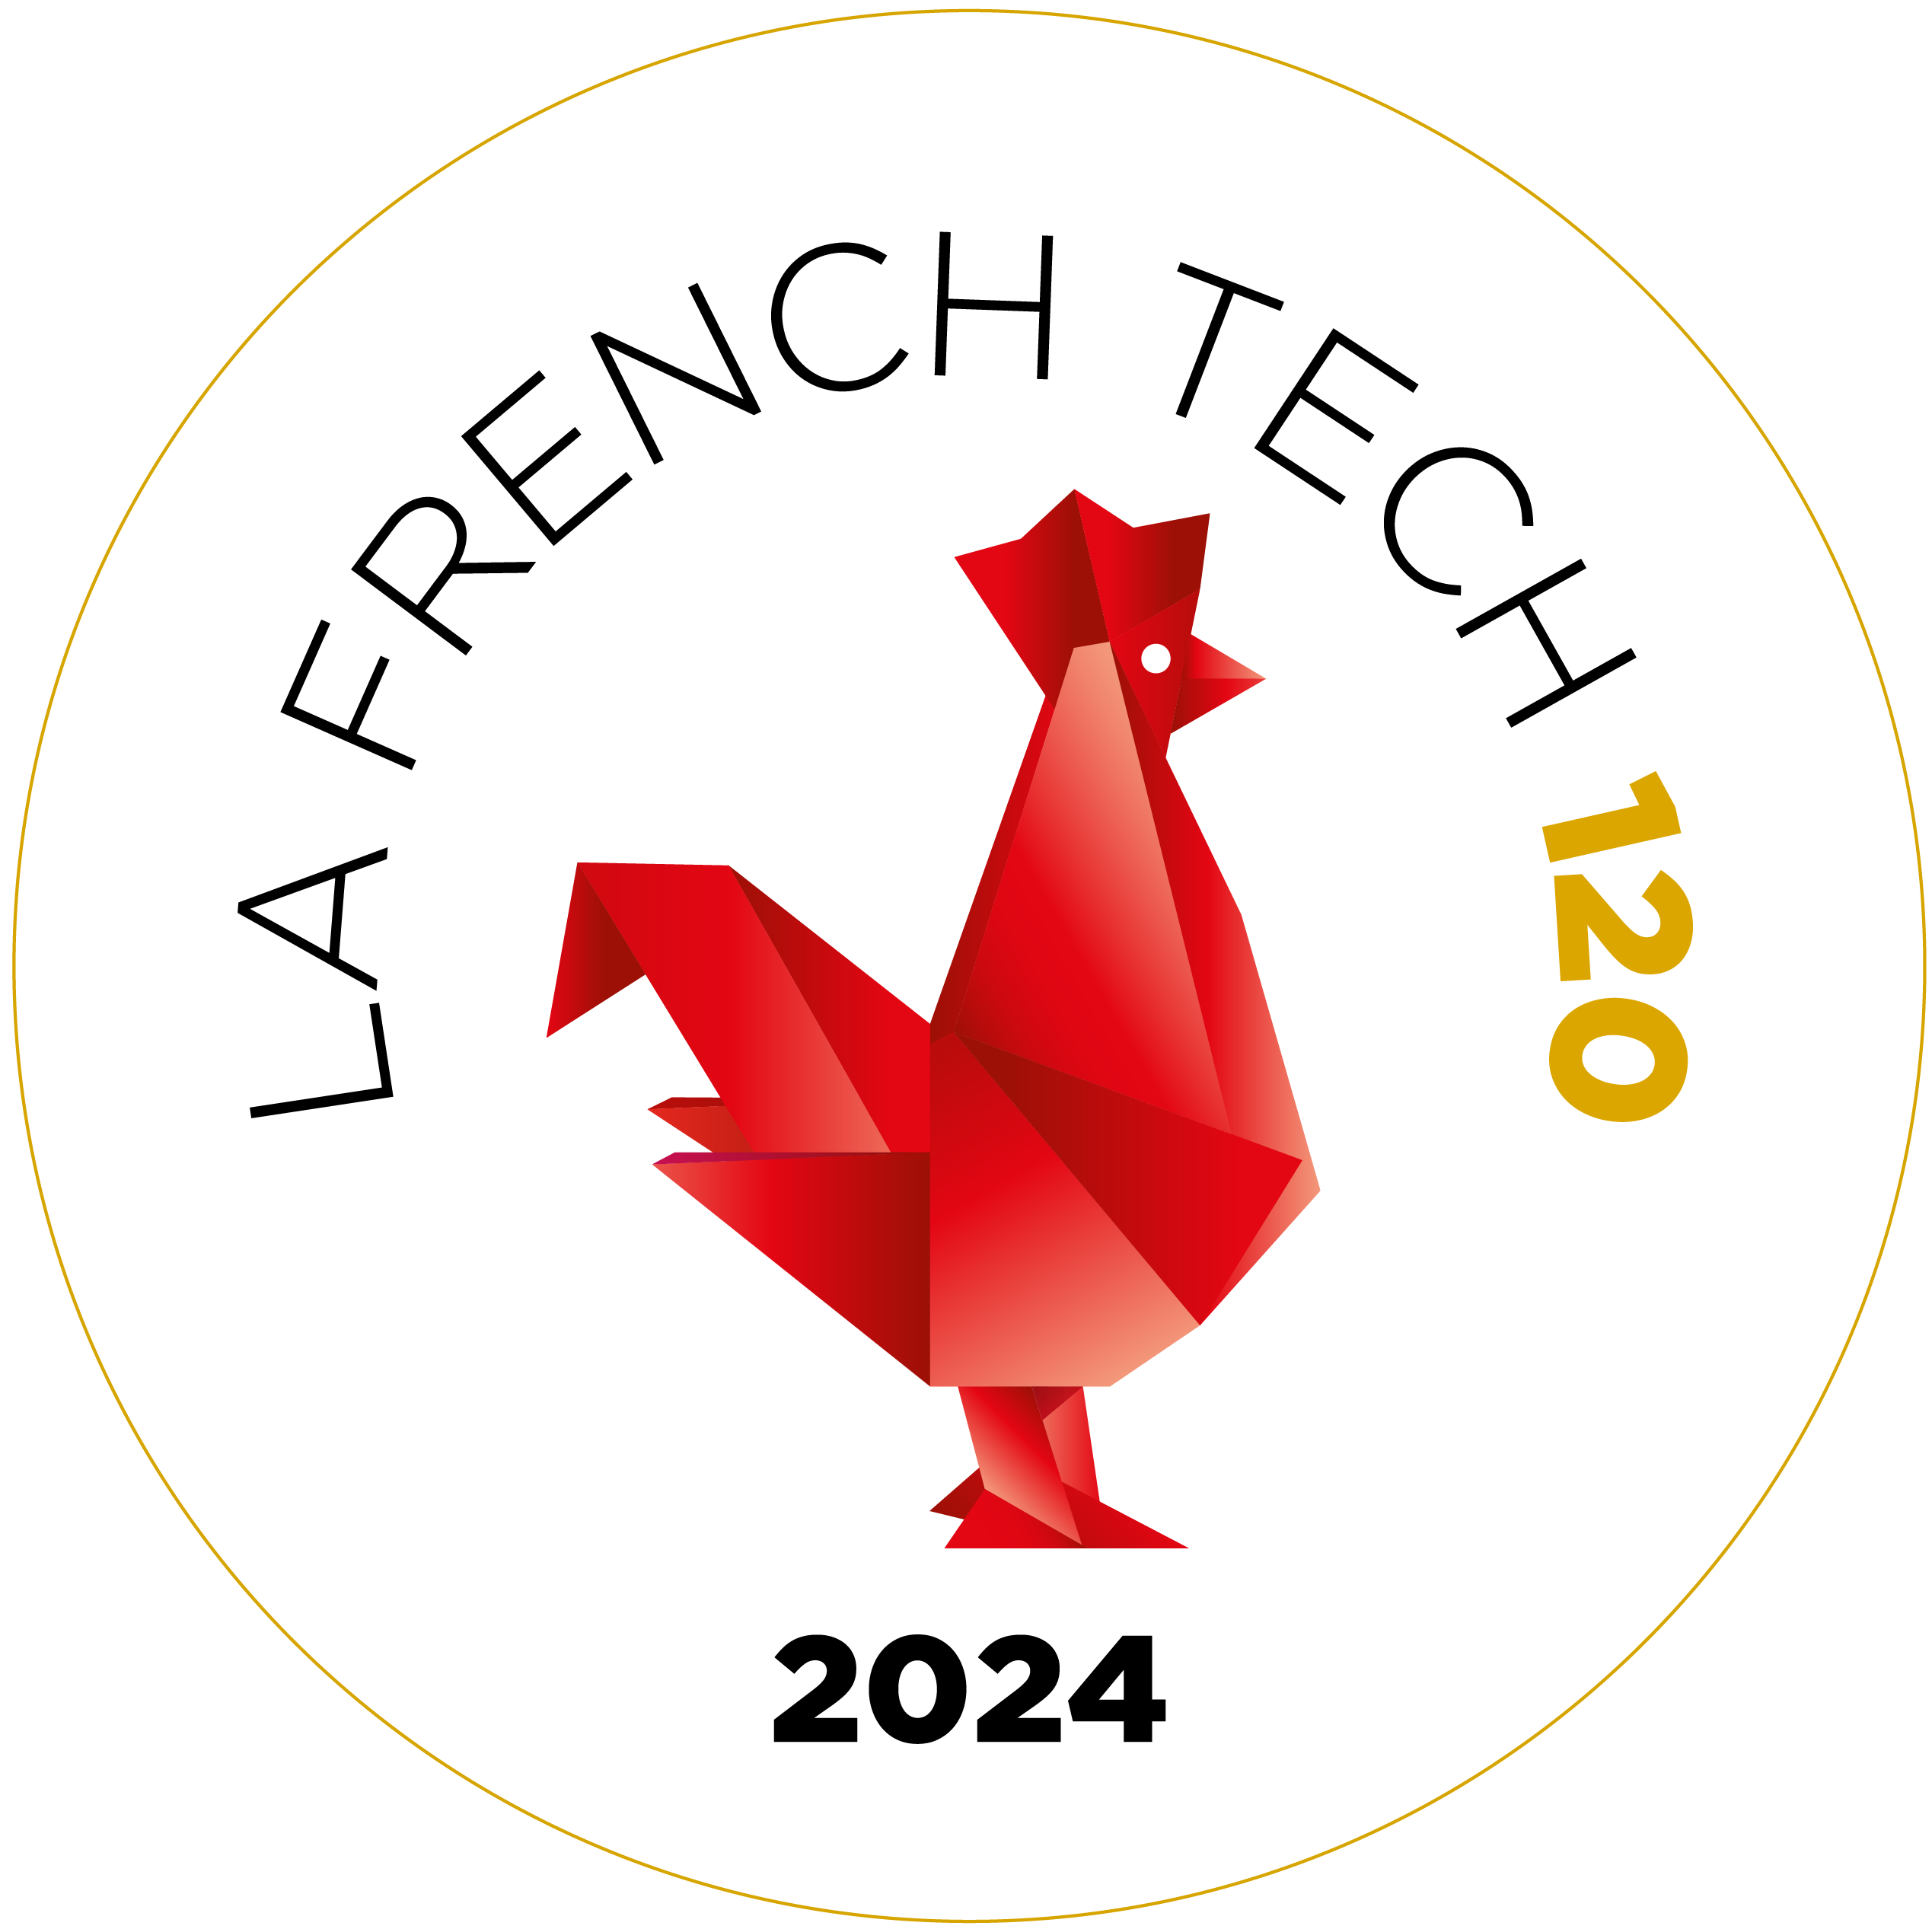 Logotipo French Tech